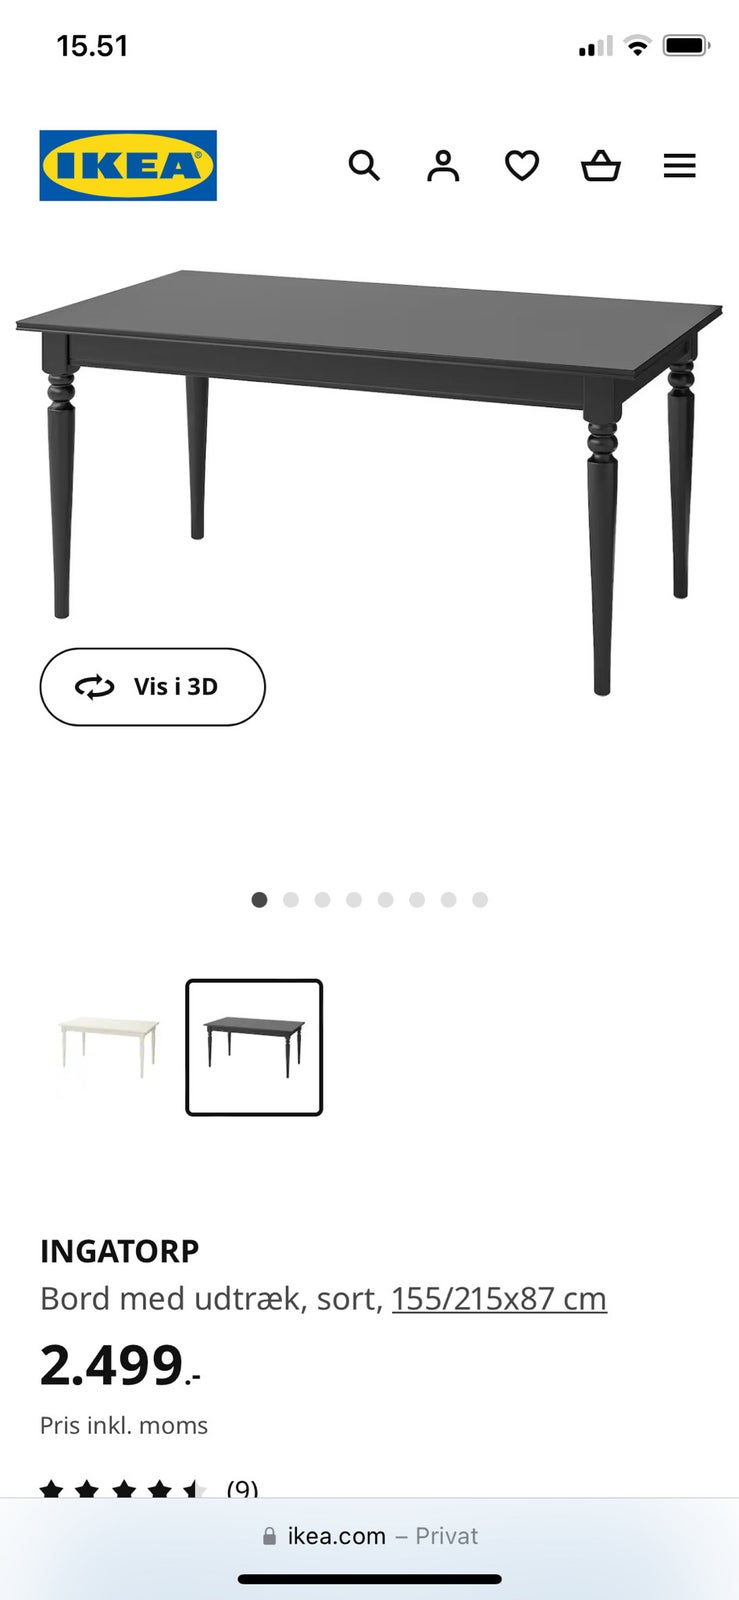 Spisebord, Ikea Ingatorp